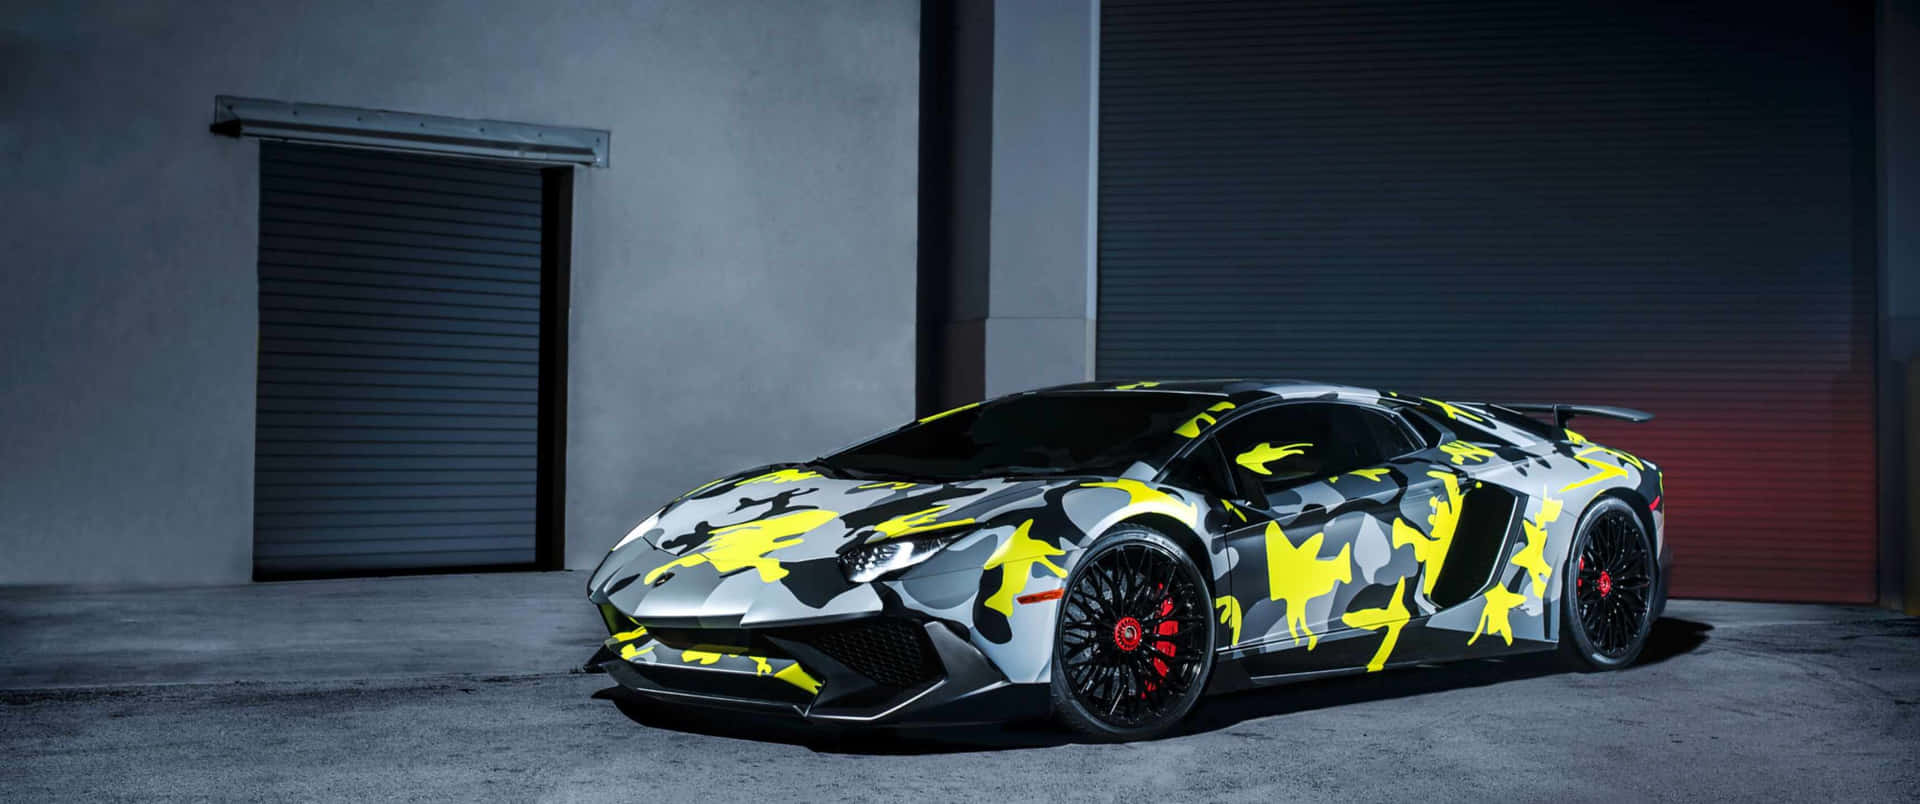 Schizzodi Colore - Una Lamborghini Fuori Dal Comune